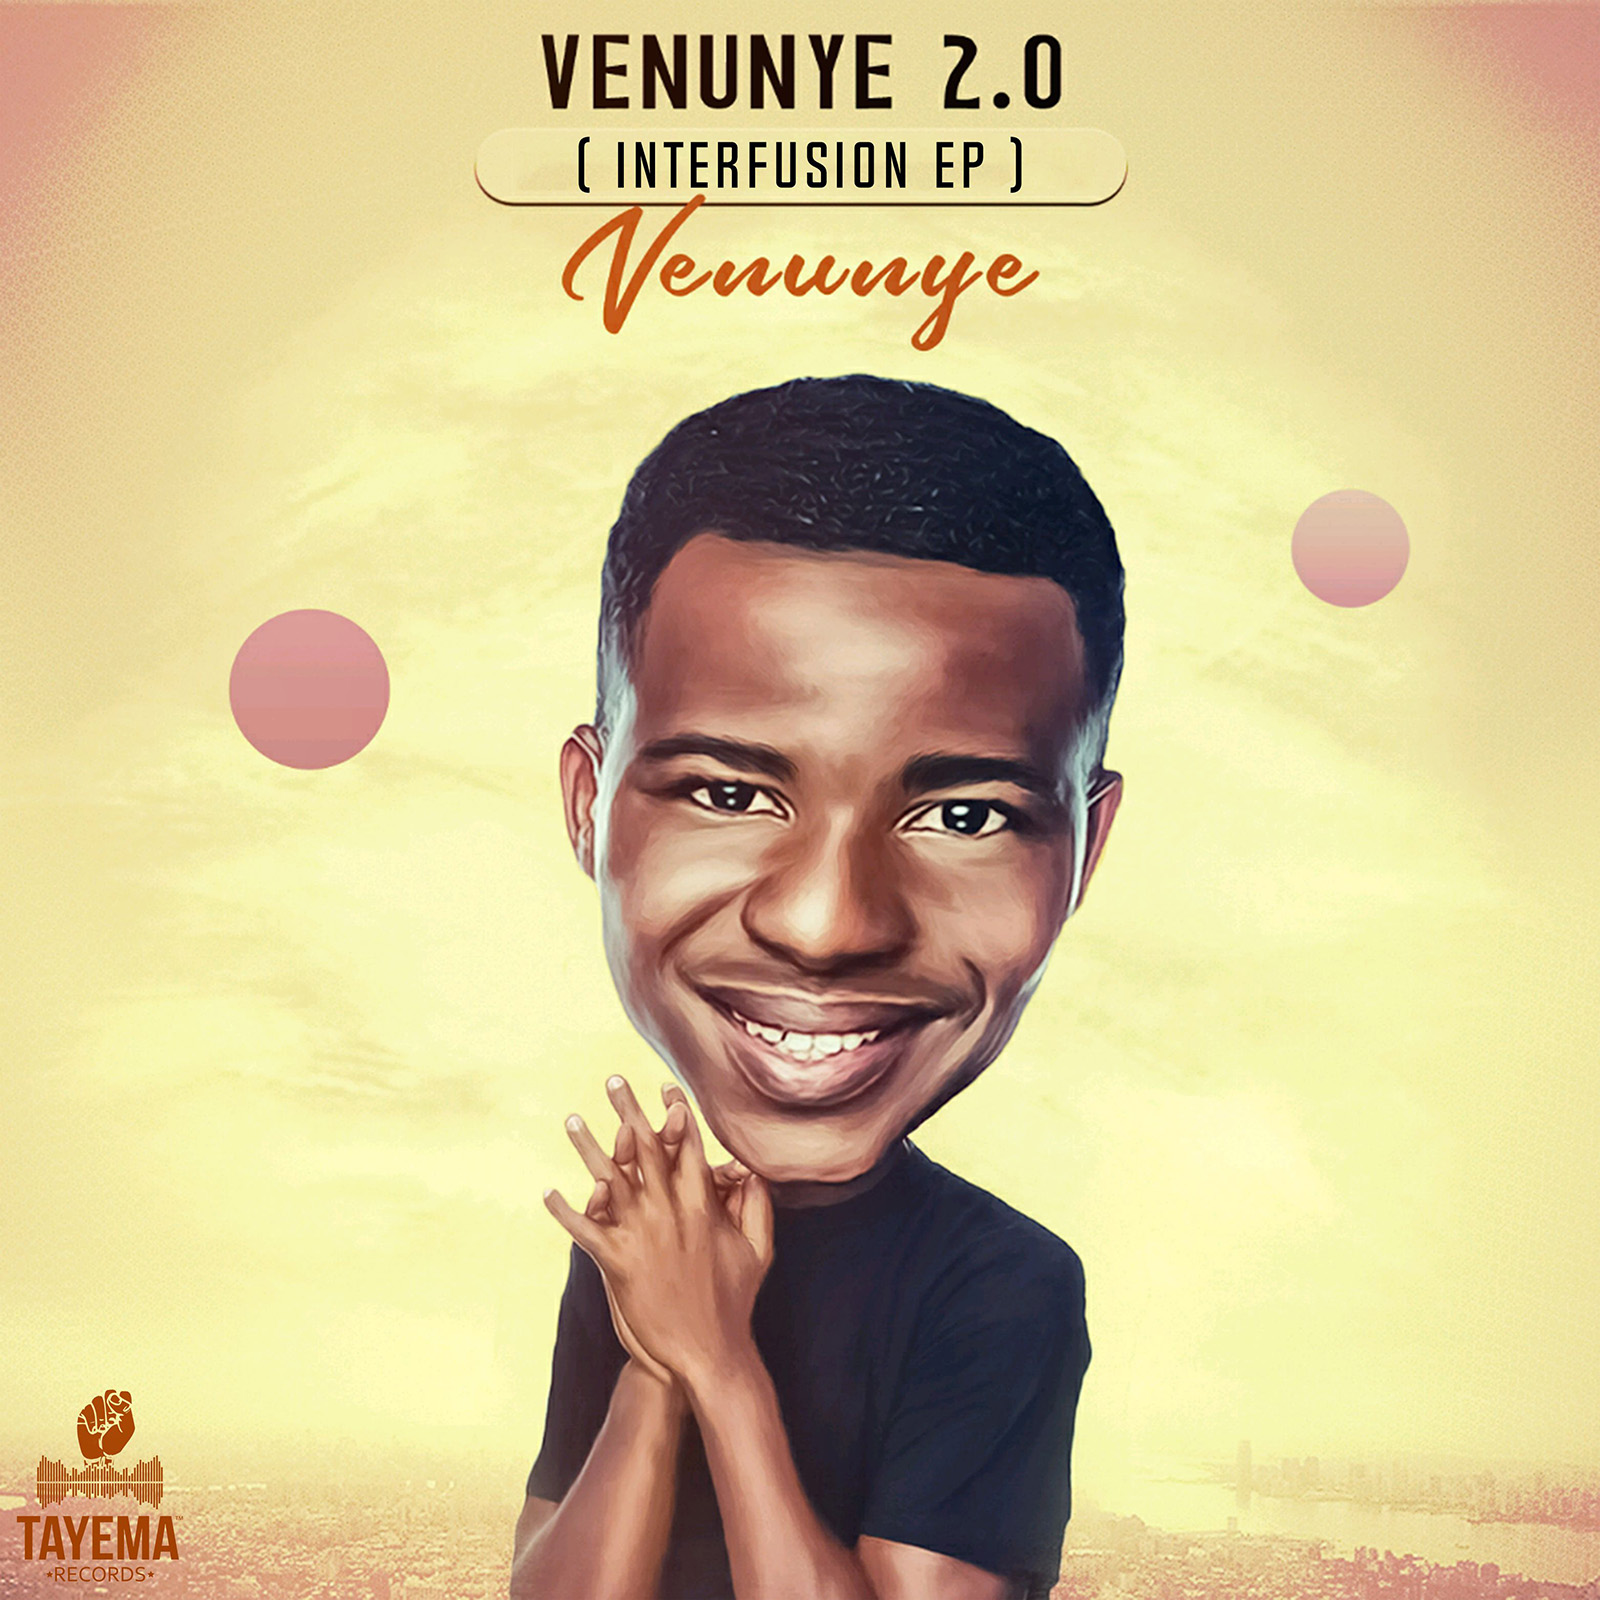 Venunye 2.0 (Interfusion) EP by Venunye